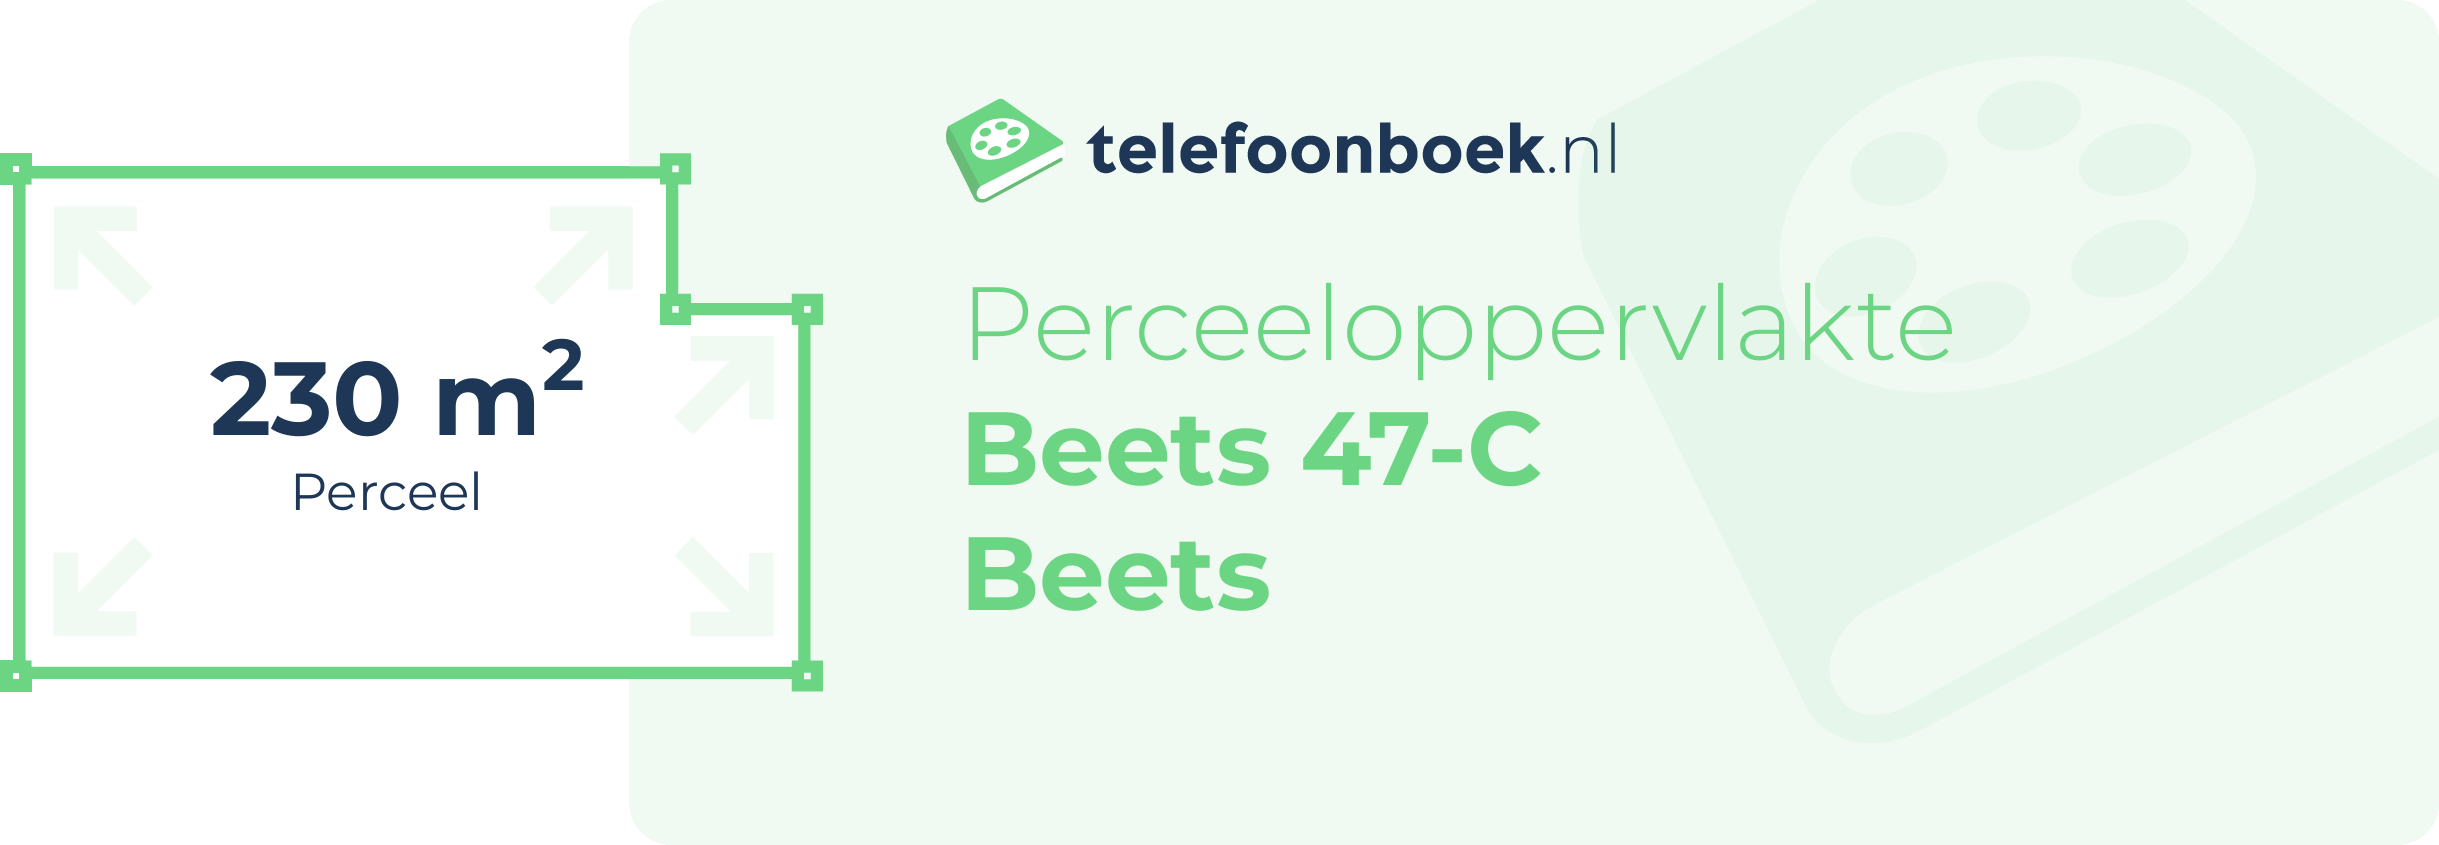 Perceeloppervlakte Beets 47-C Beets